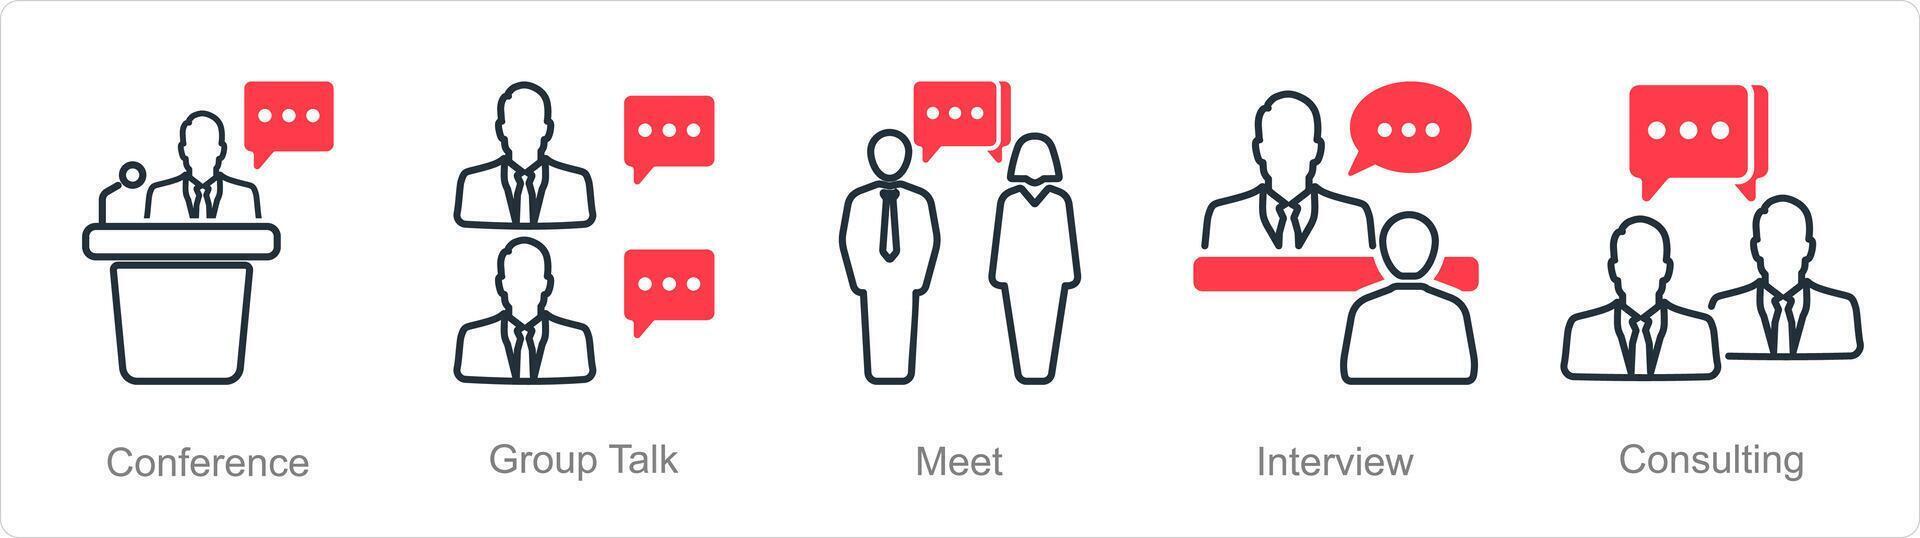 un' impostato di 5 incontro icone come conferenza, gruppo parlare, incontrare vettore